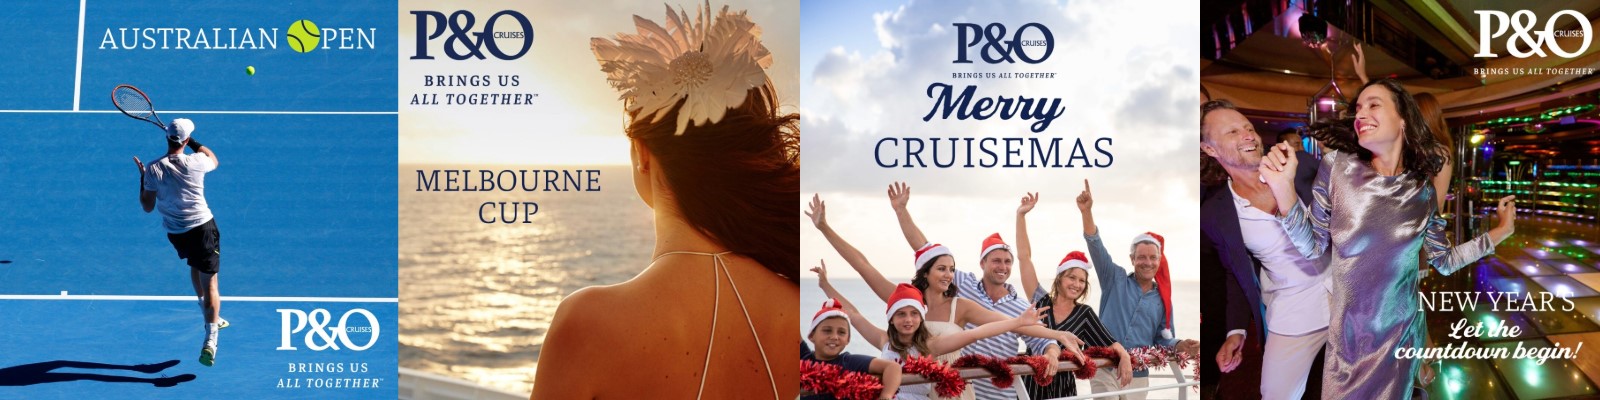 P&O Main Event Cruises